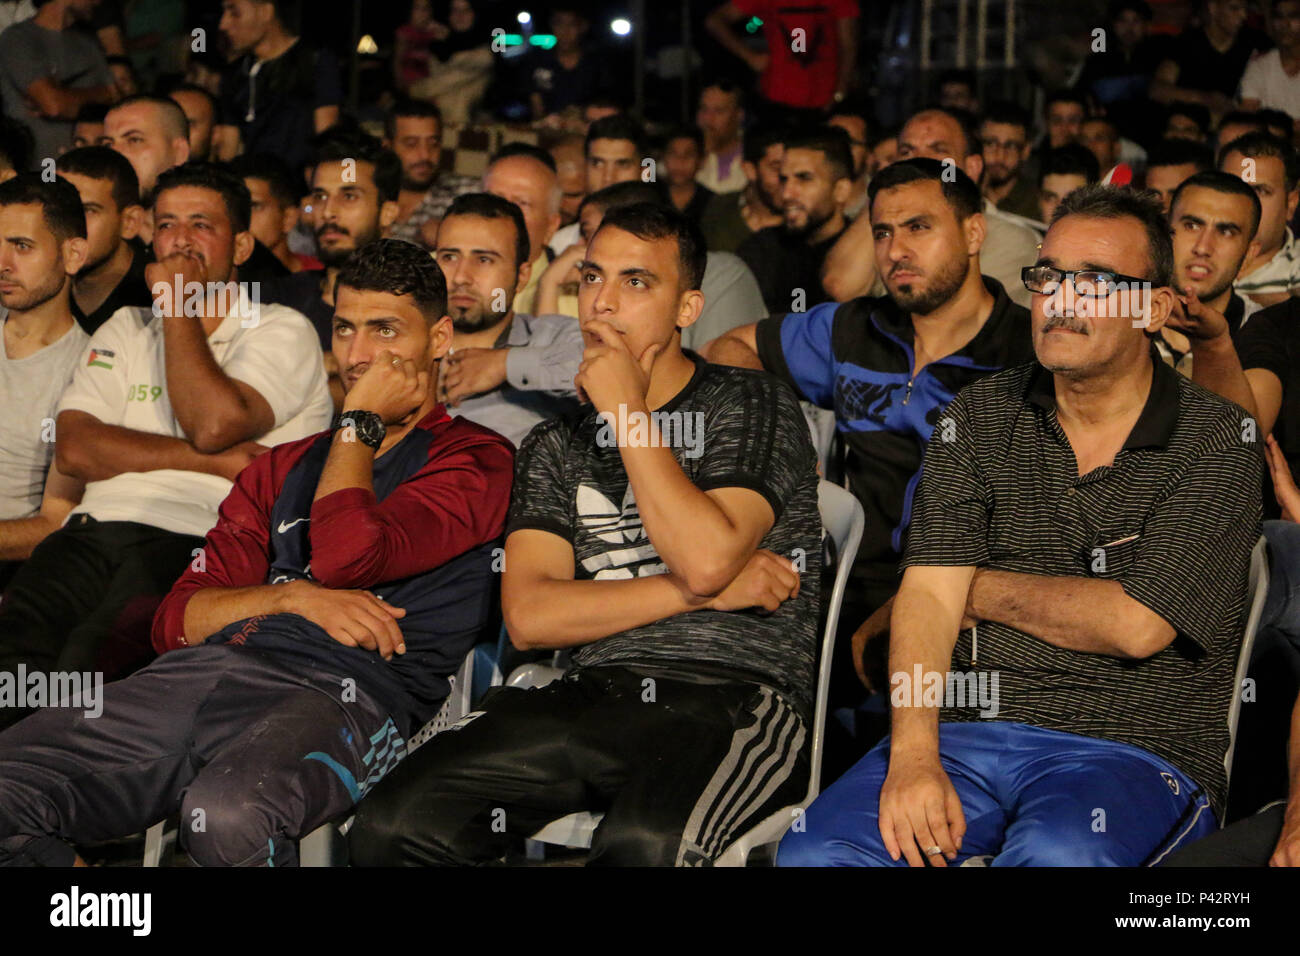 El dolor de los palestinos como los aficionados vieron el equipo egipcio match en el puerto de Gaza. Los palestinos ver en pantalla grande la Copa del Mundo de 2018 Rusia Grupo un partido de fútbol entre Rusia y Egipto en el puerto marítimo de la ciudad de Gaza. Rusia ganó 3-1. Foto de stock